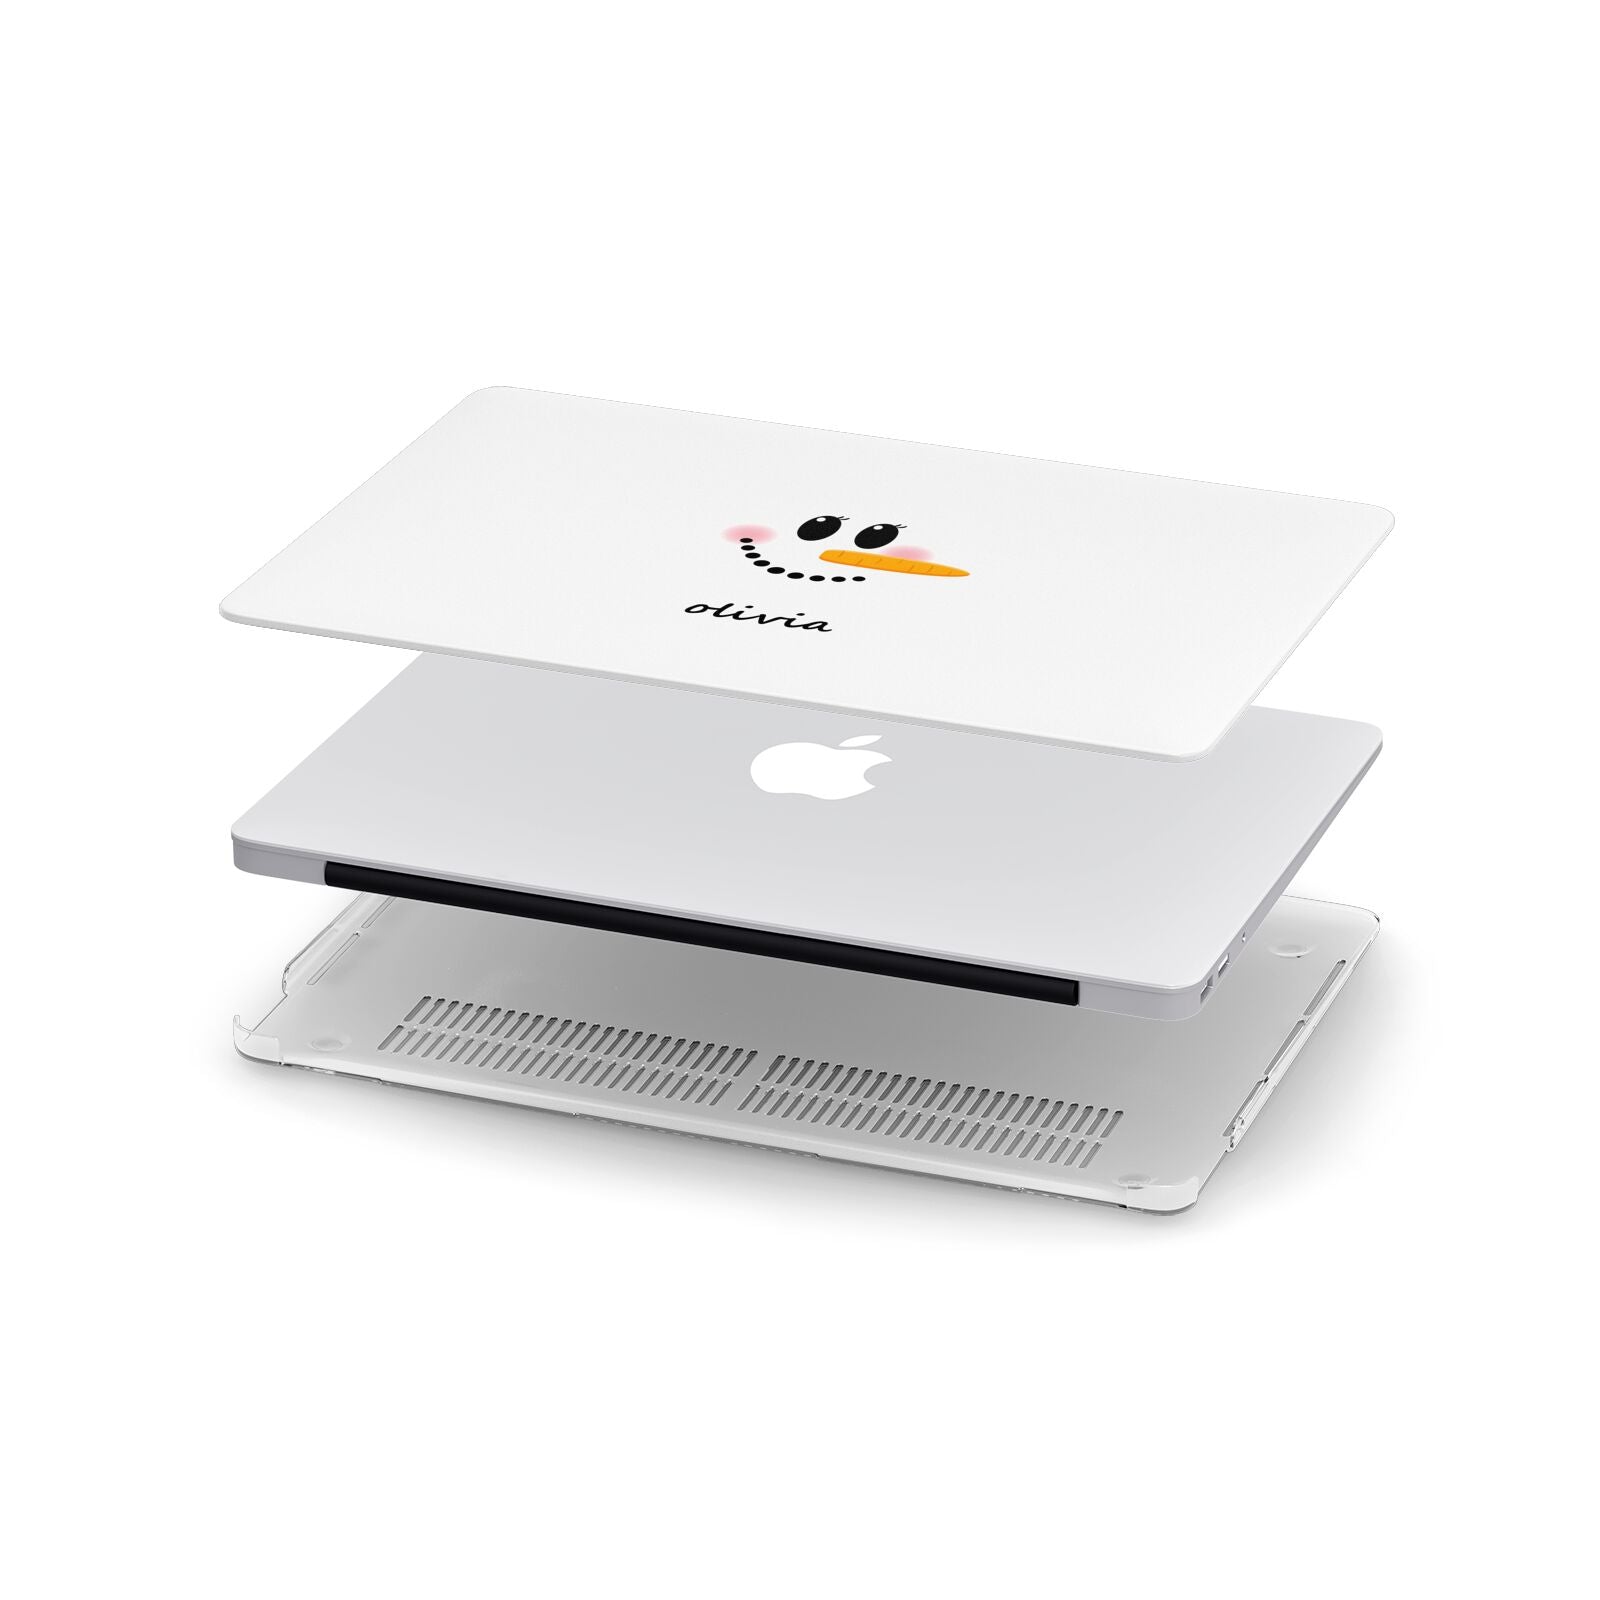 Personalised Snowwoman Apple MacBook Case in Detail